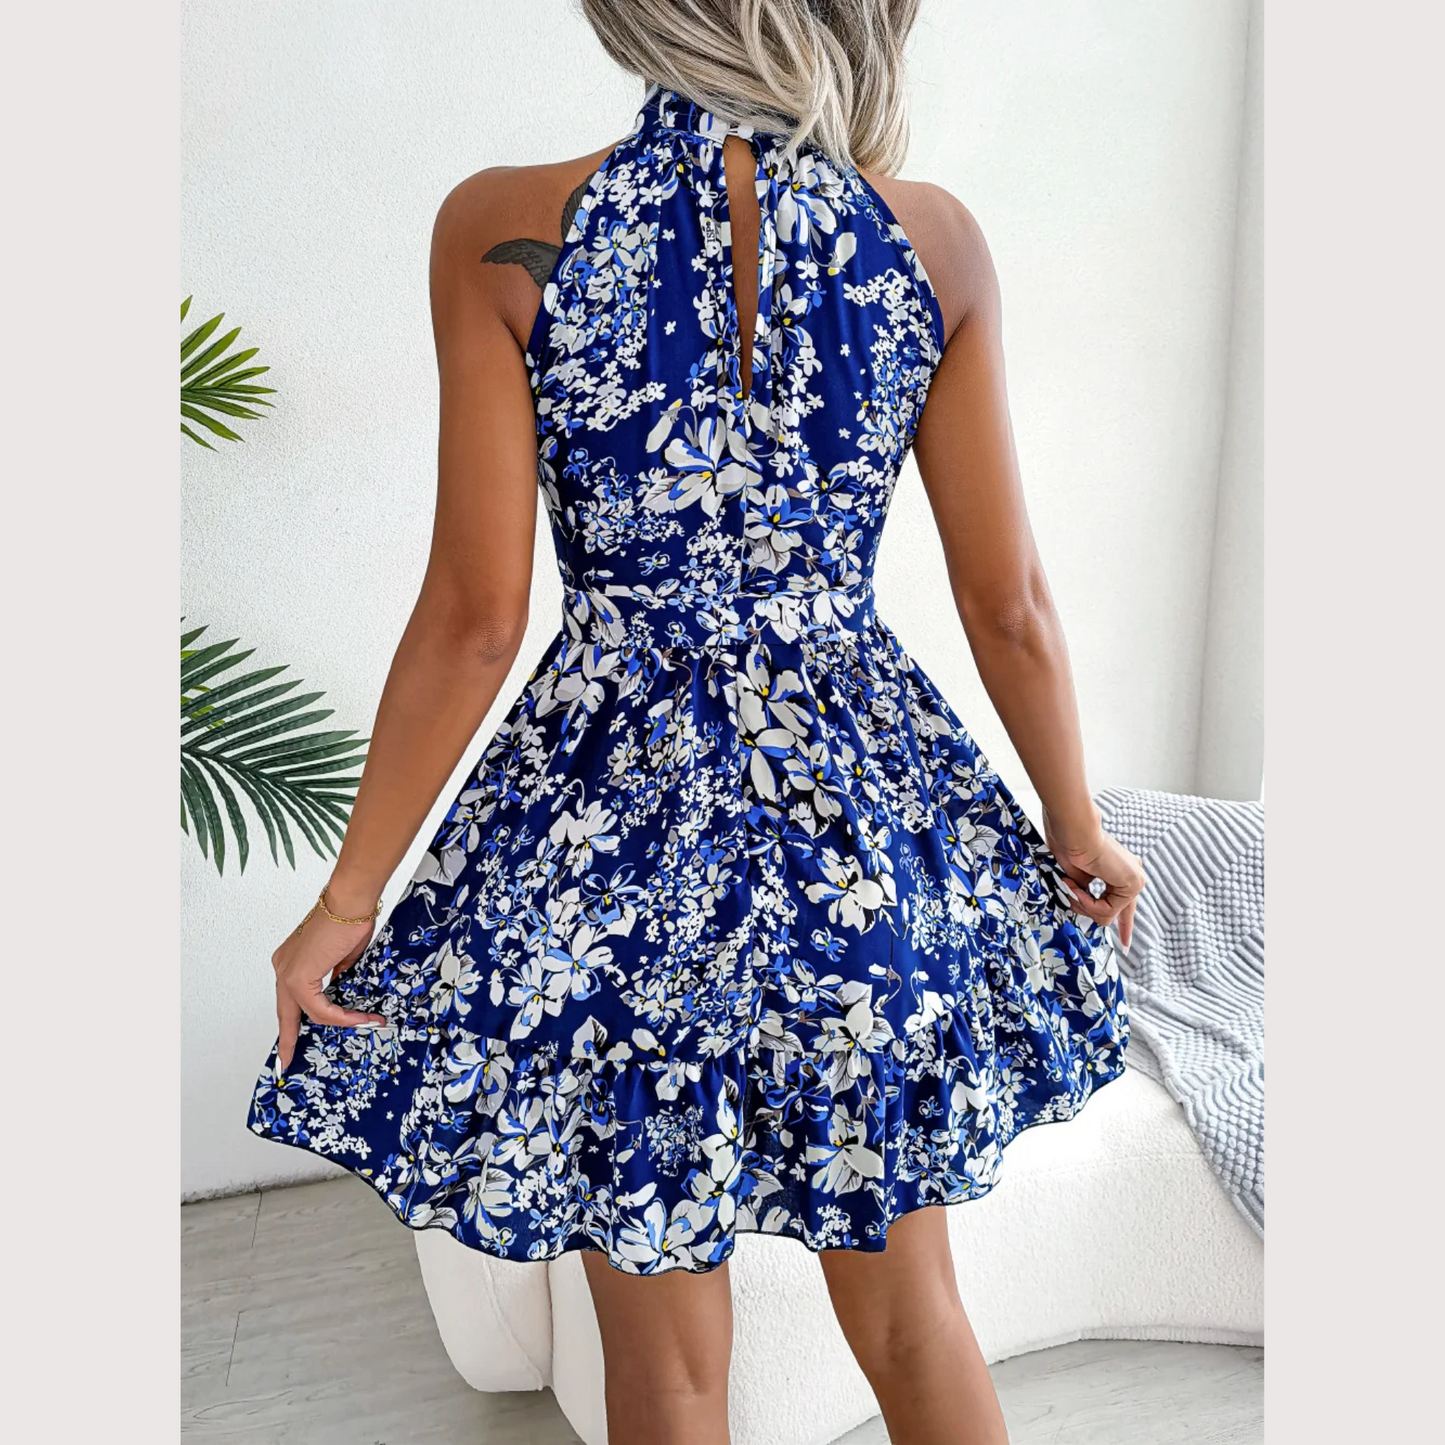 Ladonna - Blue Floral Halter Neck Spring Dress